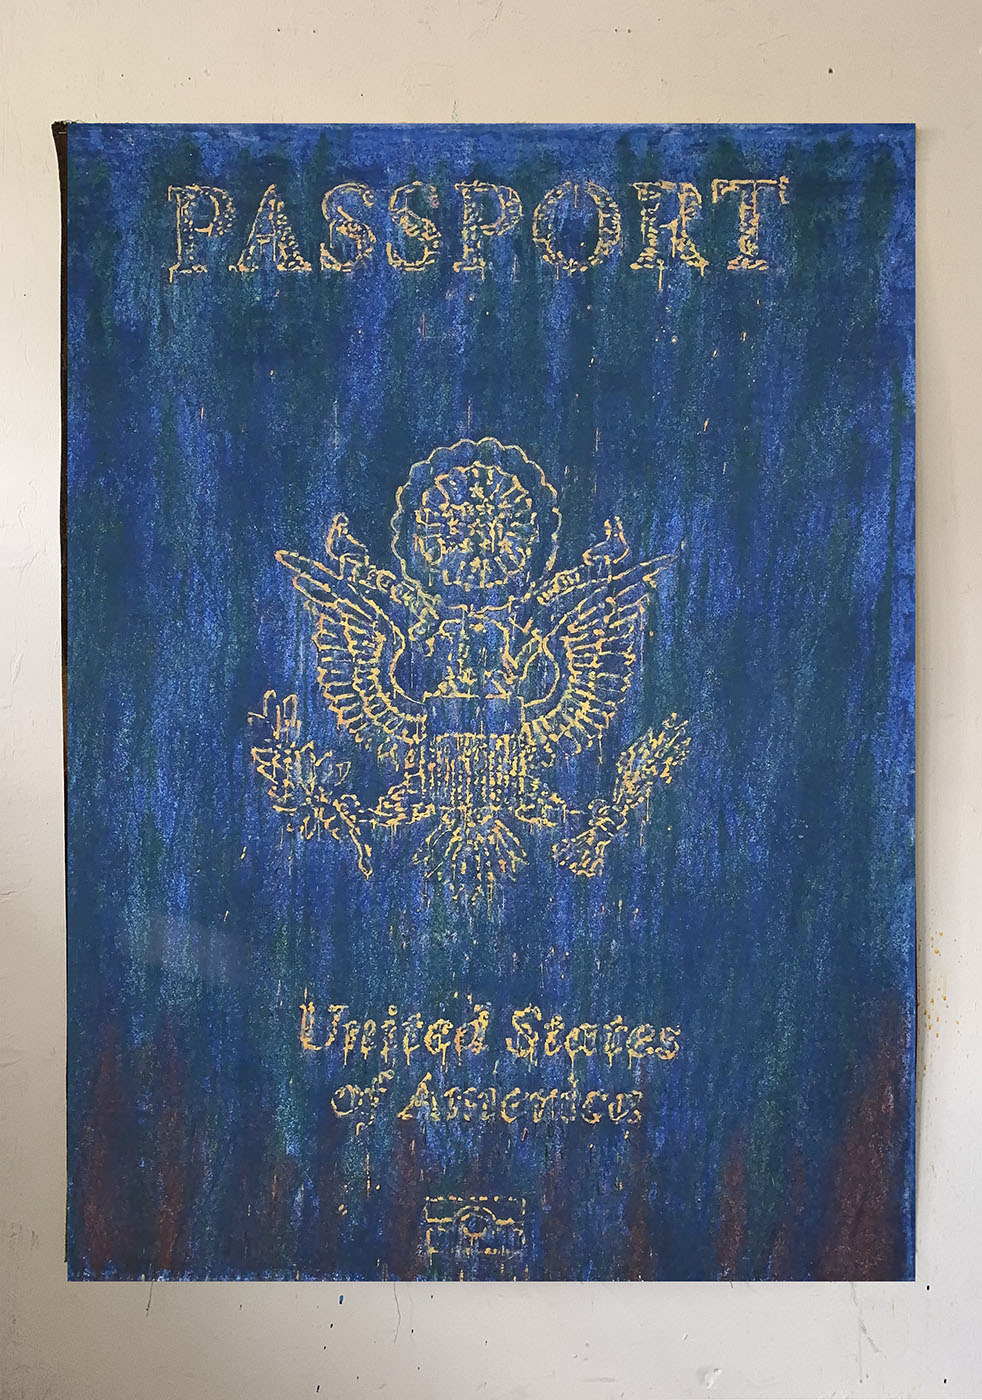 Pasaporte americano, 56x45 in, técnica mixta sobre lienzo, 2022.